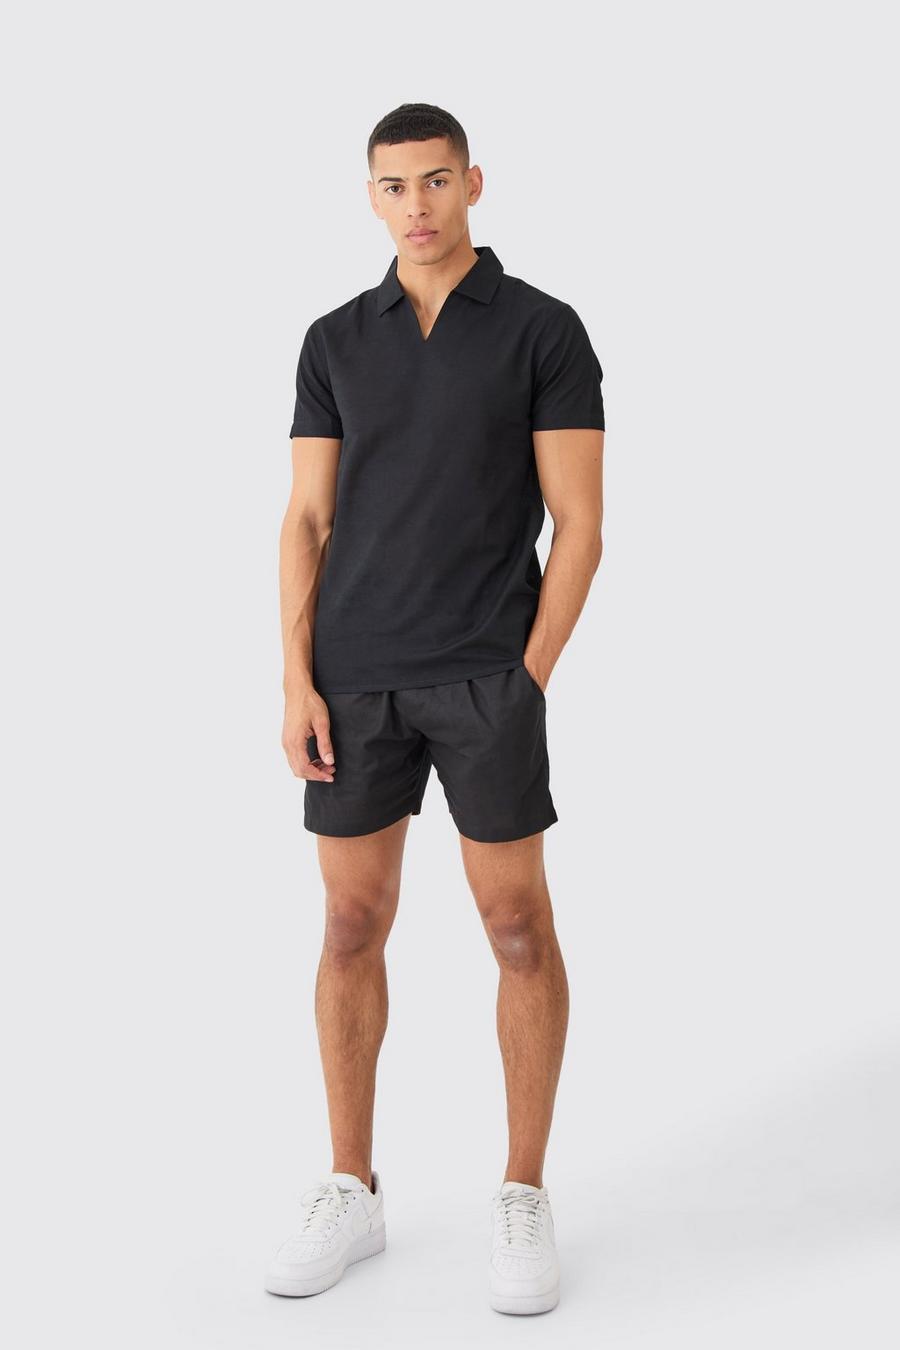 Black Short Sleeve Linen Overhead V Neck Shirt